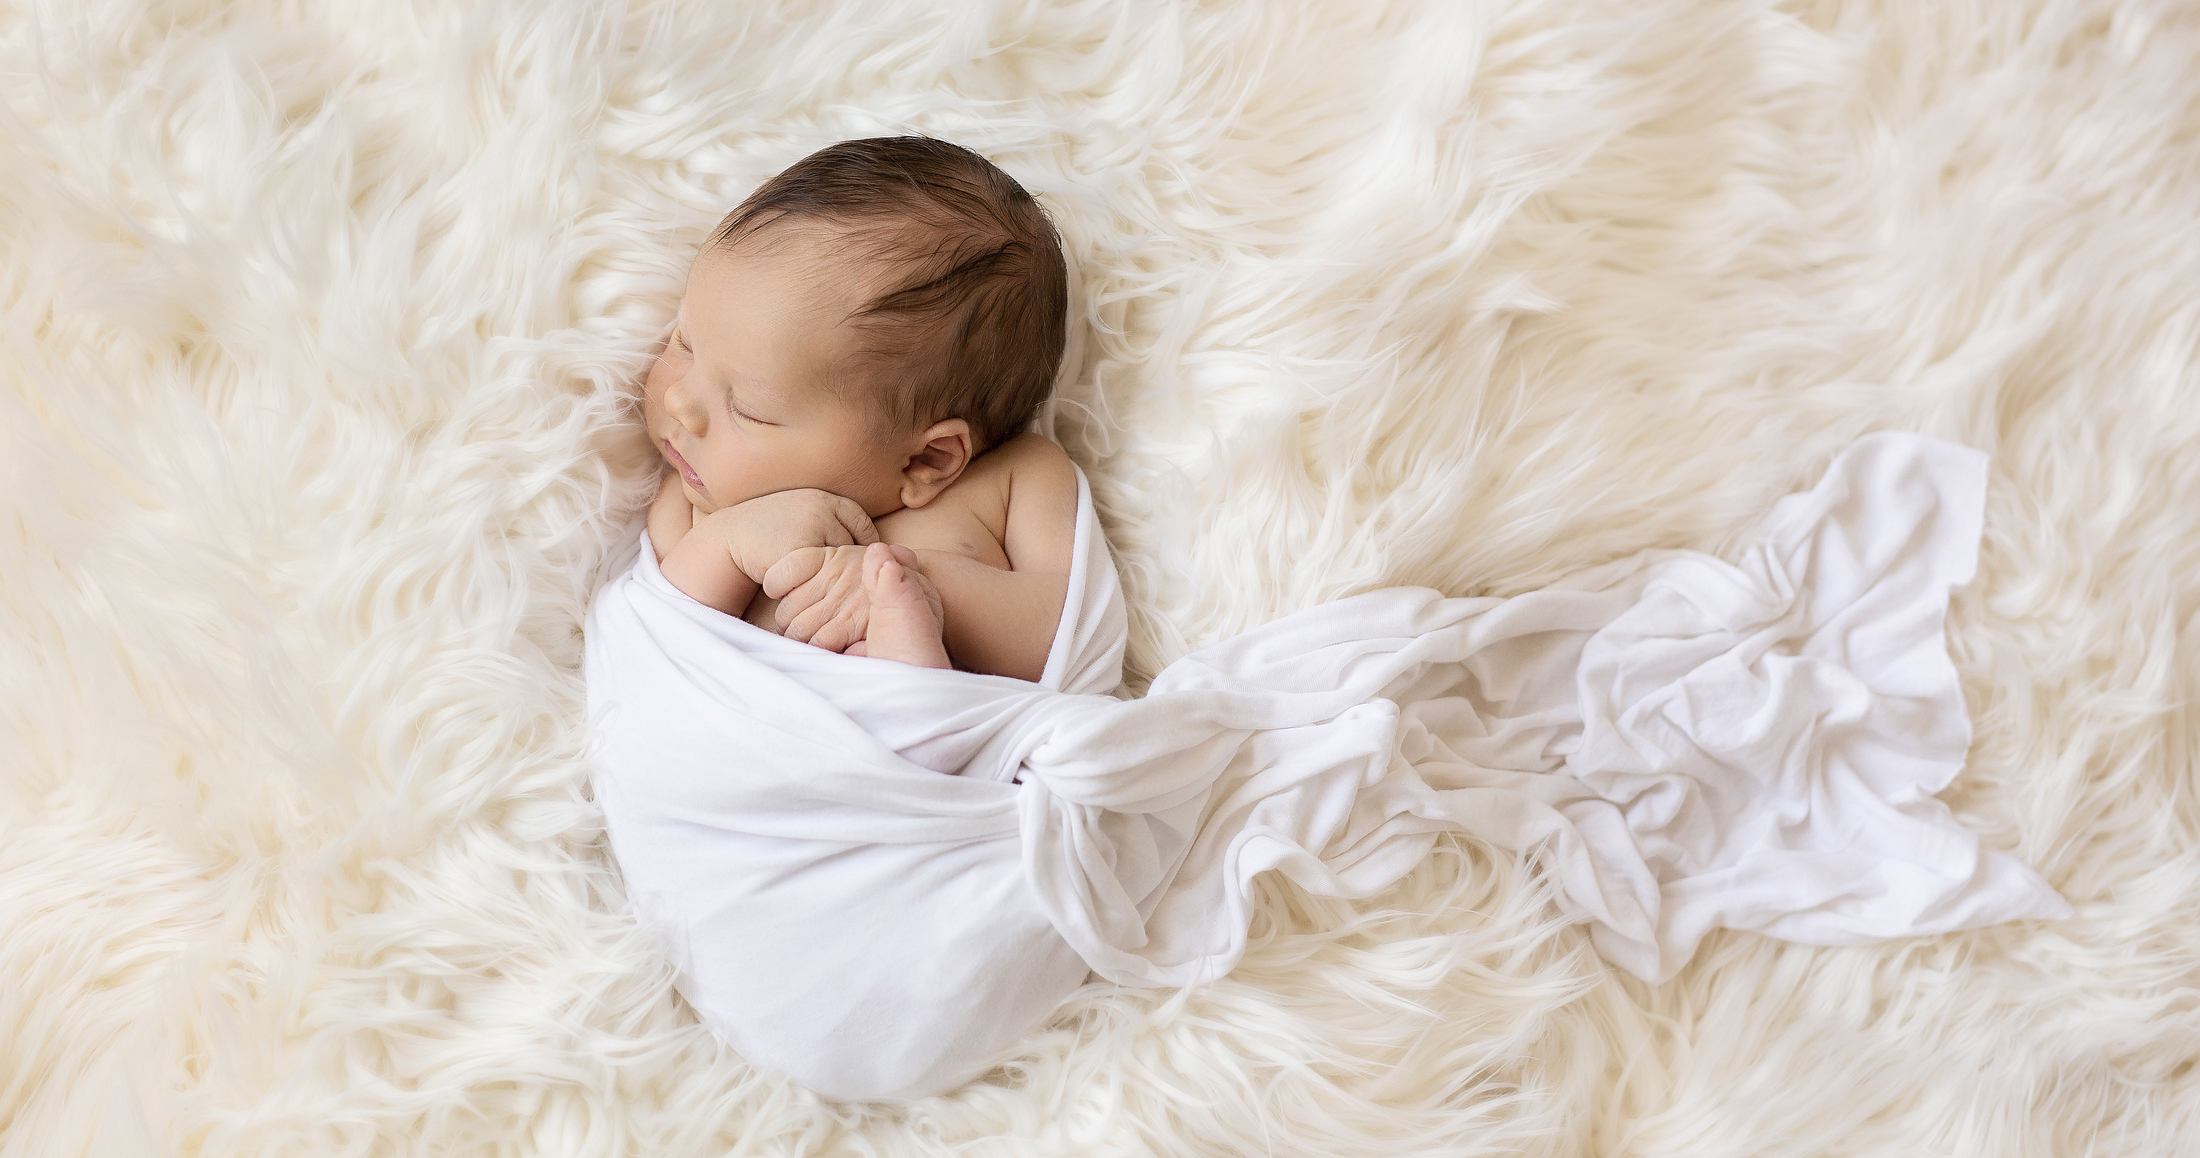 photographe bebe naissance nancy